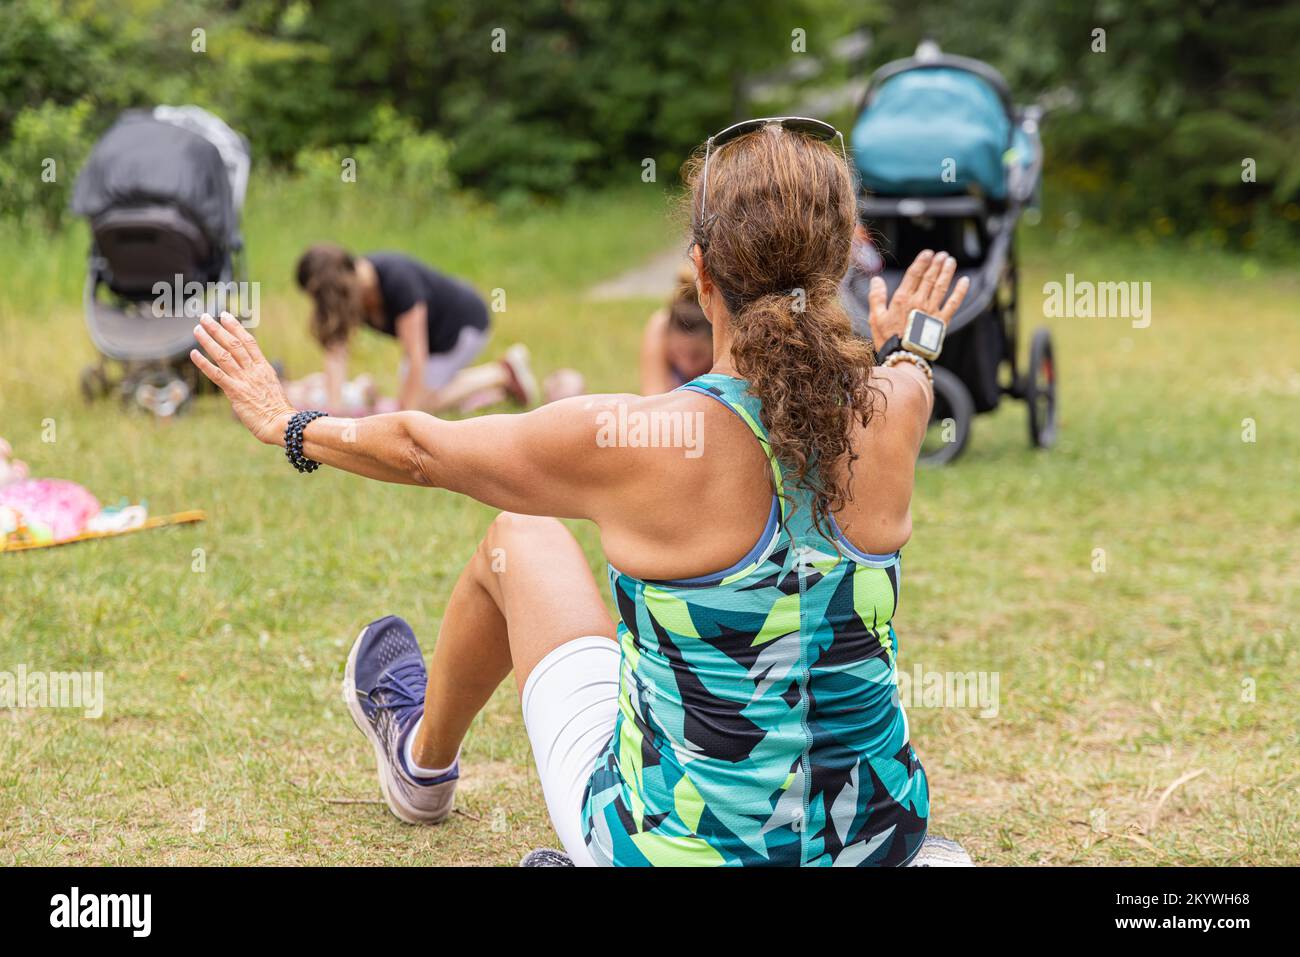 Selektive Fokussierung vom Rücken einer braunen Trainerin, die Yoga-Posen übt und trainiert, während sie auf dem Gras sitzt und von Schülern in der Natur umgeben ist Stockfoto